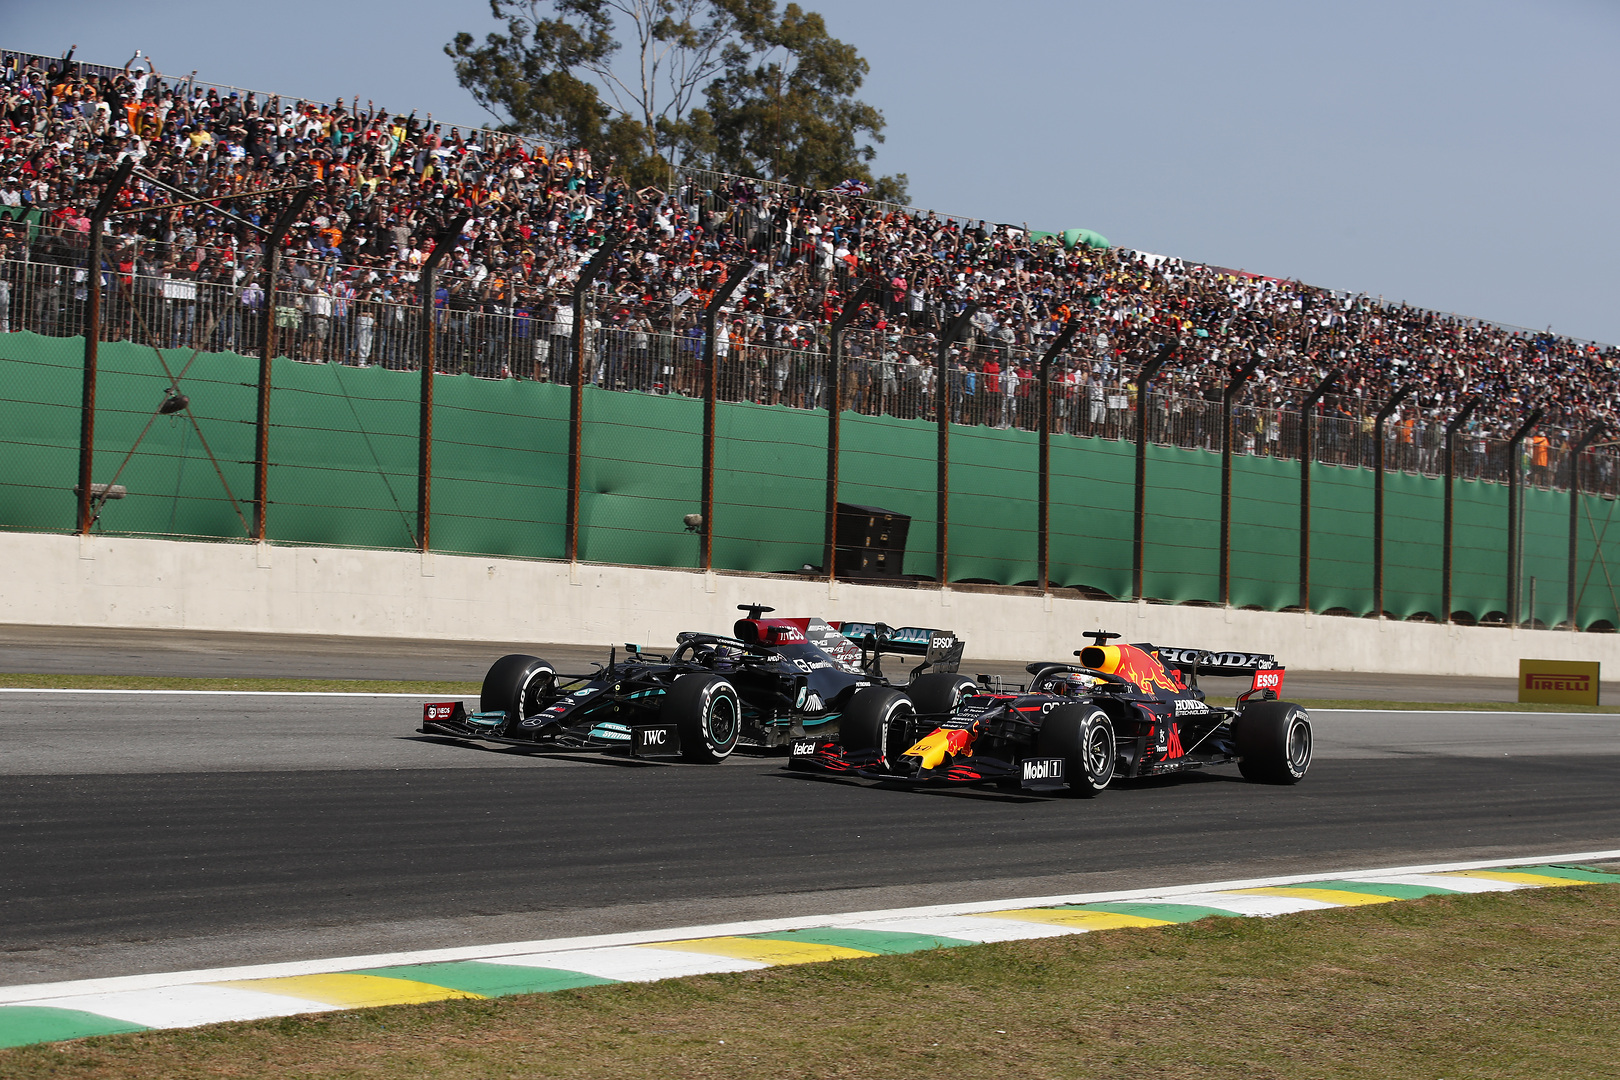 F1 - Les classements F1 2021 après le Grand Prix du Brésil